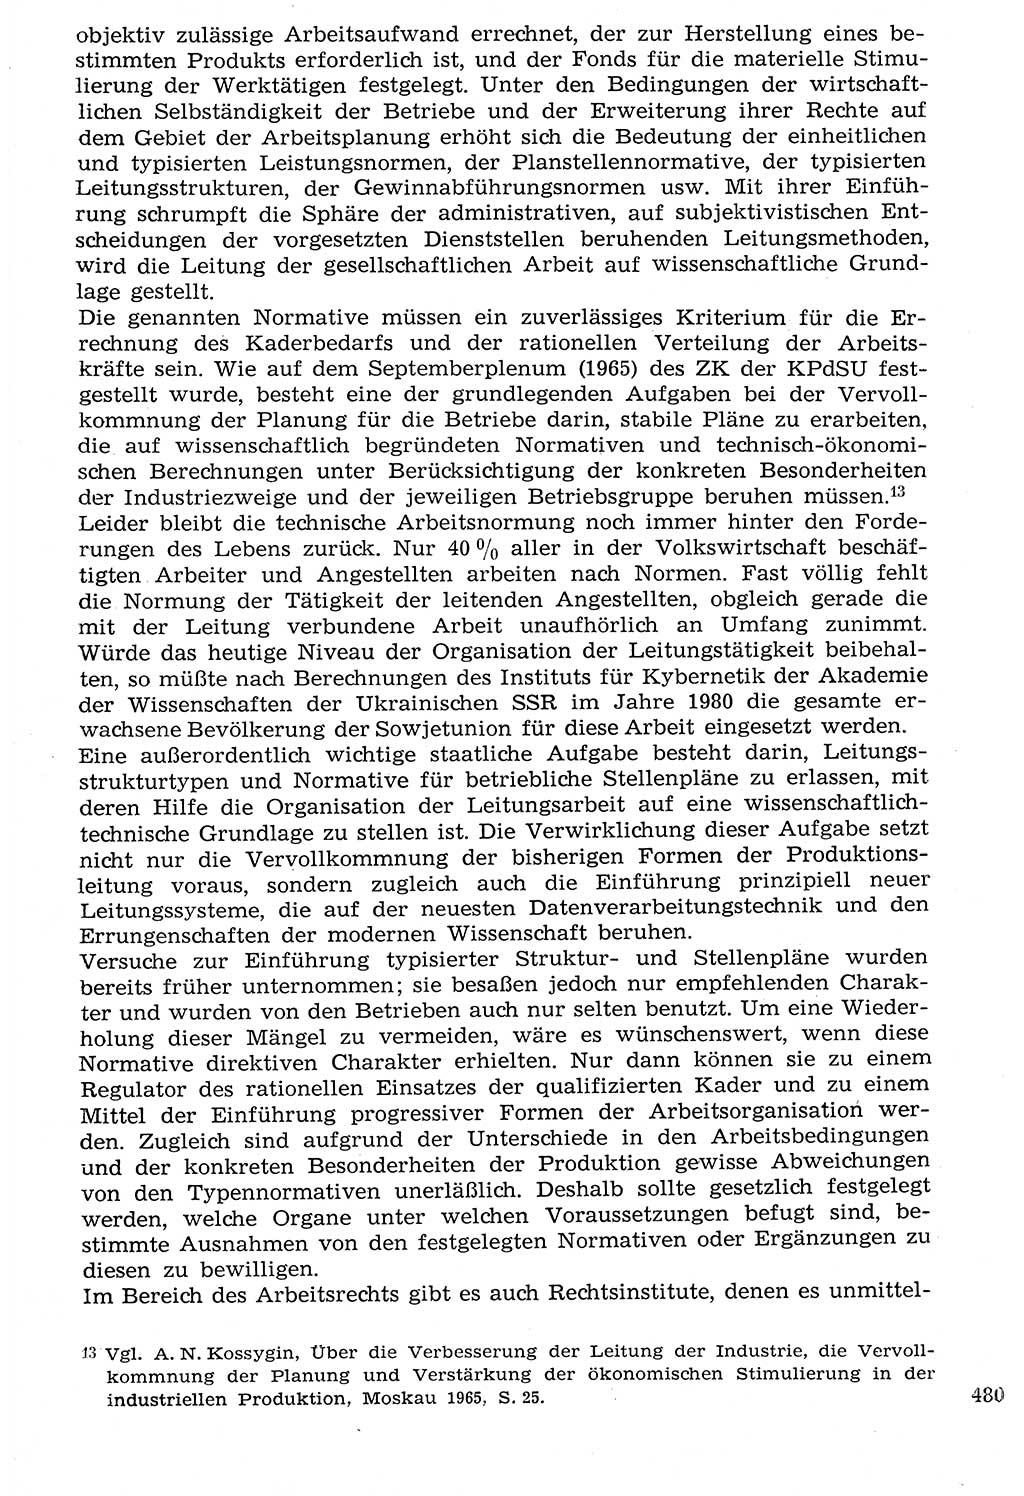 Staat und Recht (StuR), 17. Jahrgang [Deutsche Demokratische Republik (DDR)] 1968, Seite 480 (StuR DDR 1968, S. 480)